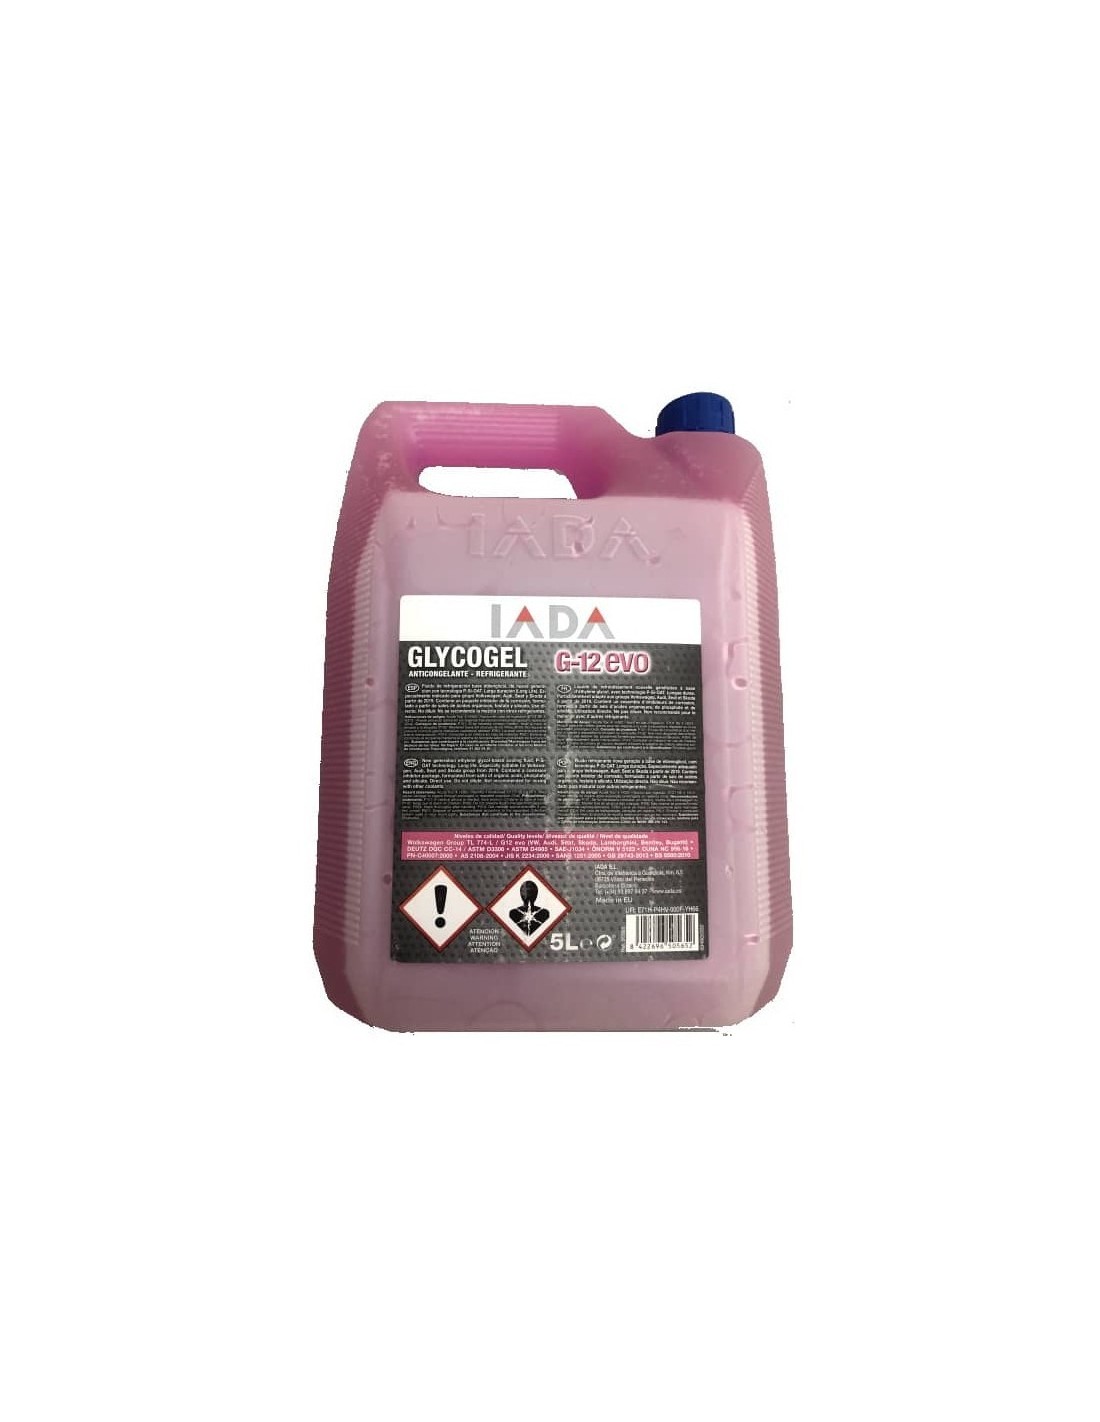 Anticongelante Glycogel G-12 EVO, IADA 5 L- 19,90€-   Capacidad 5 Litros